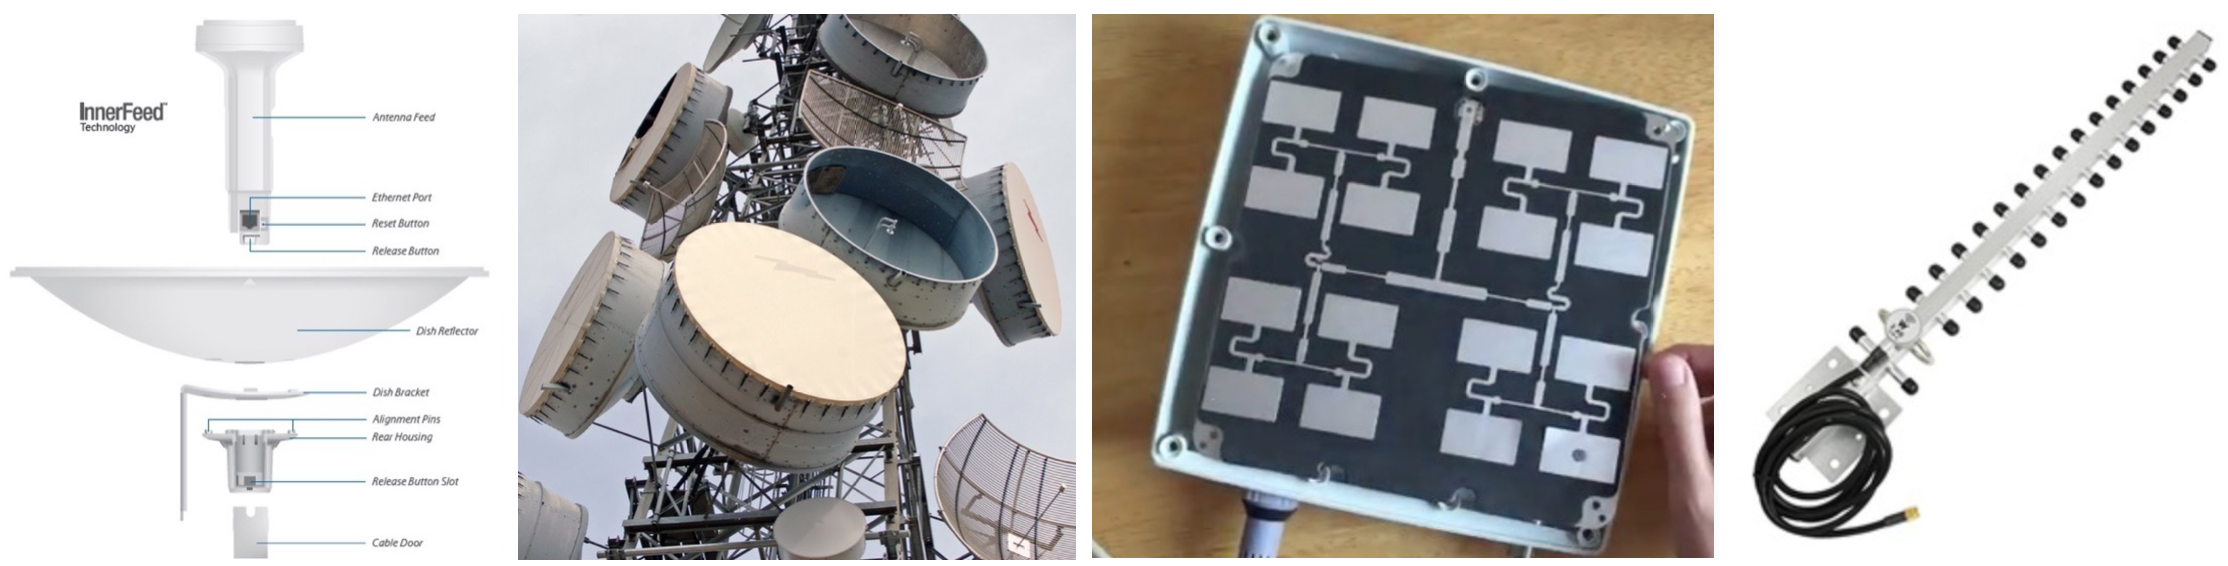 Parábola Ubiquiti (hw integrado), torre con tambores, panel moi directivo (desmontado, polarización vertical) e yagi para 2.4 GHz